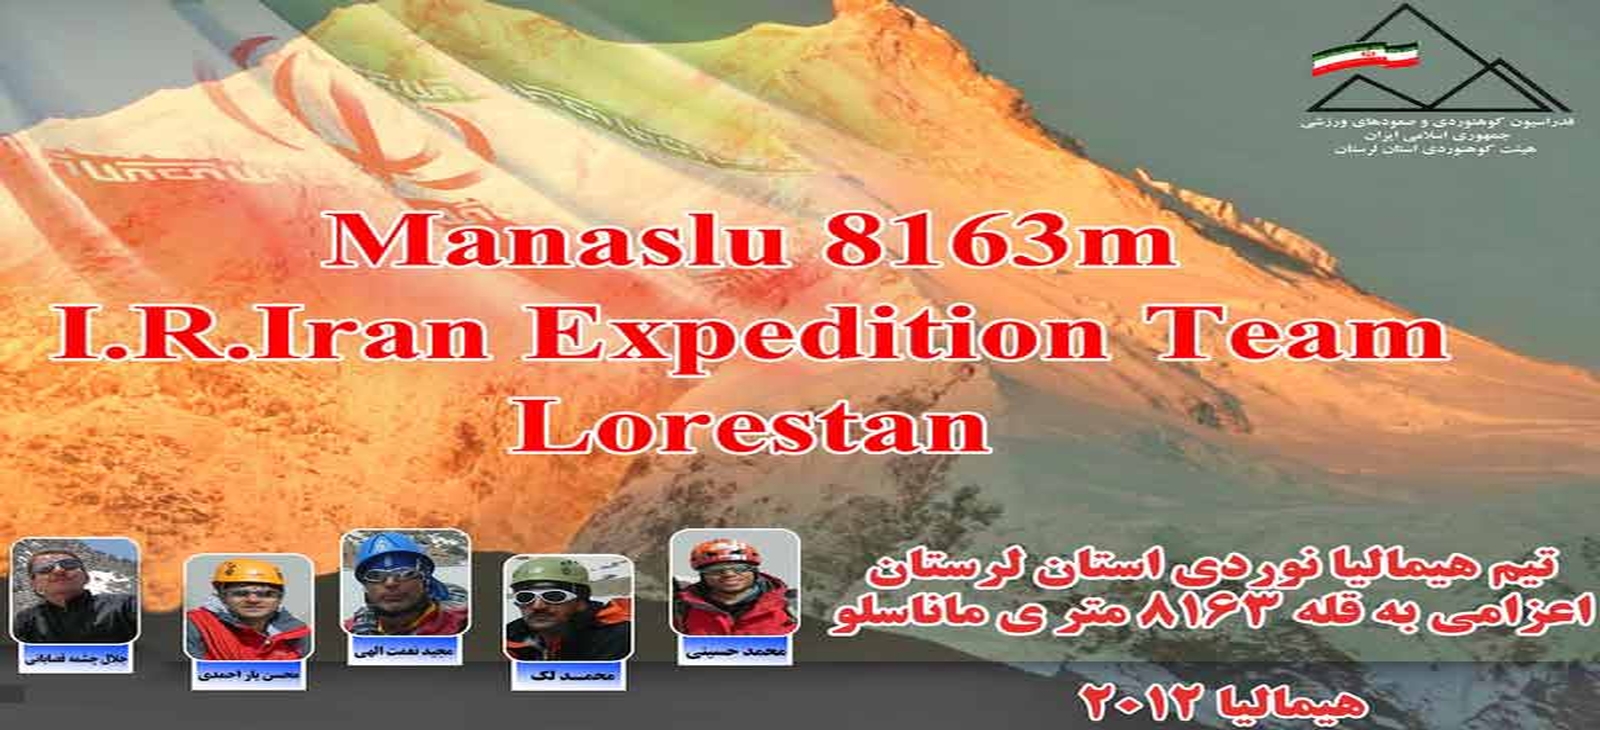 ارسباران اسپانسر آقای محسن یاراحمدی بر روی قله ماناسلو